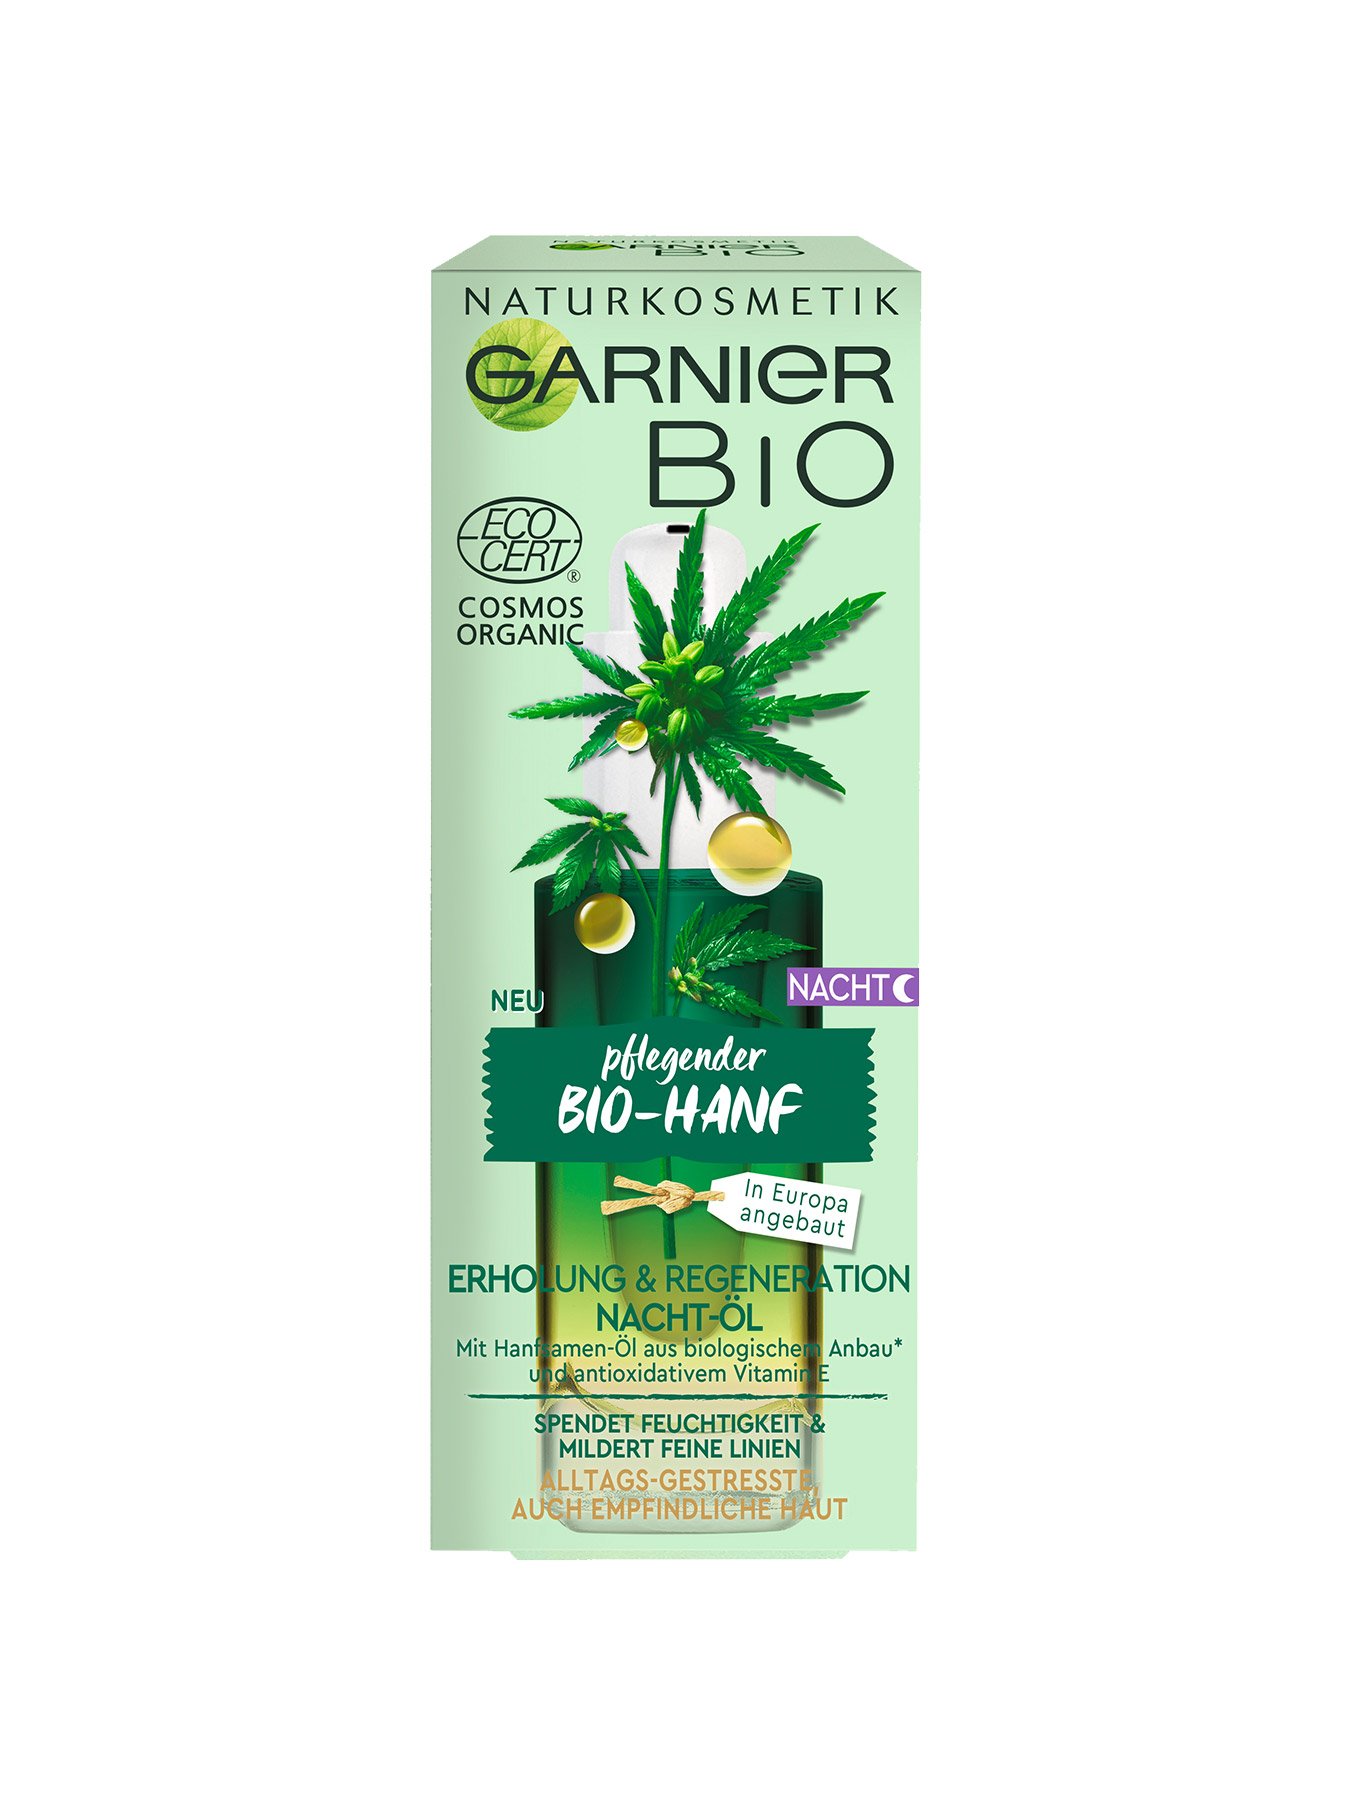 Bio Garnier Pflegendes Bio-Hanf | Nacht-Öl Garnier